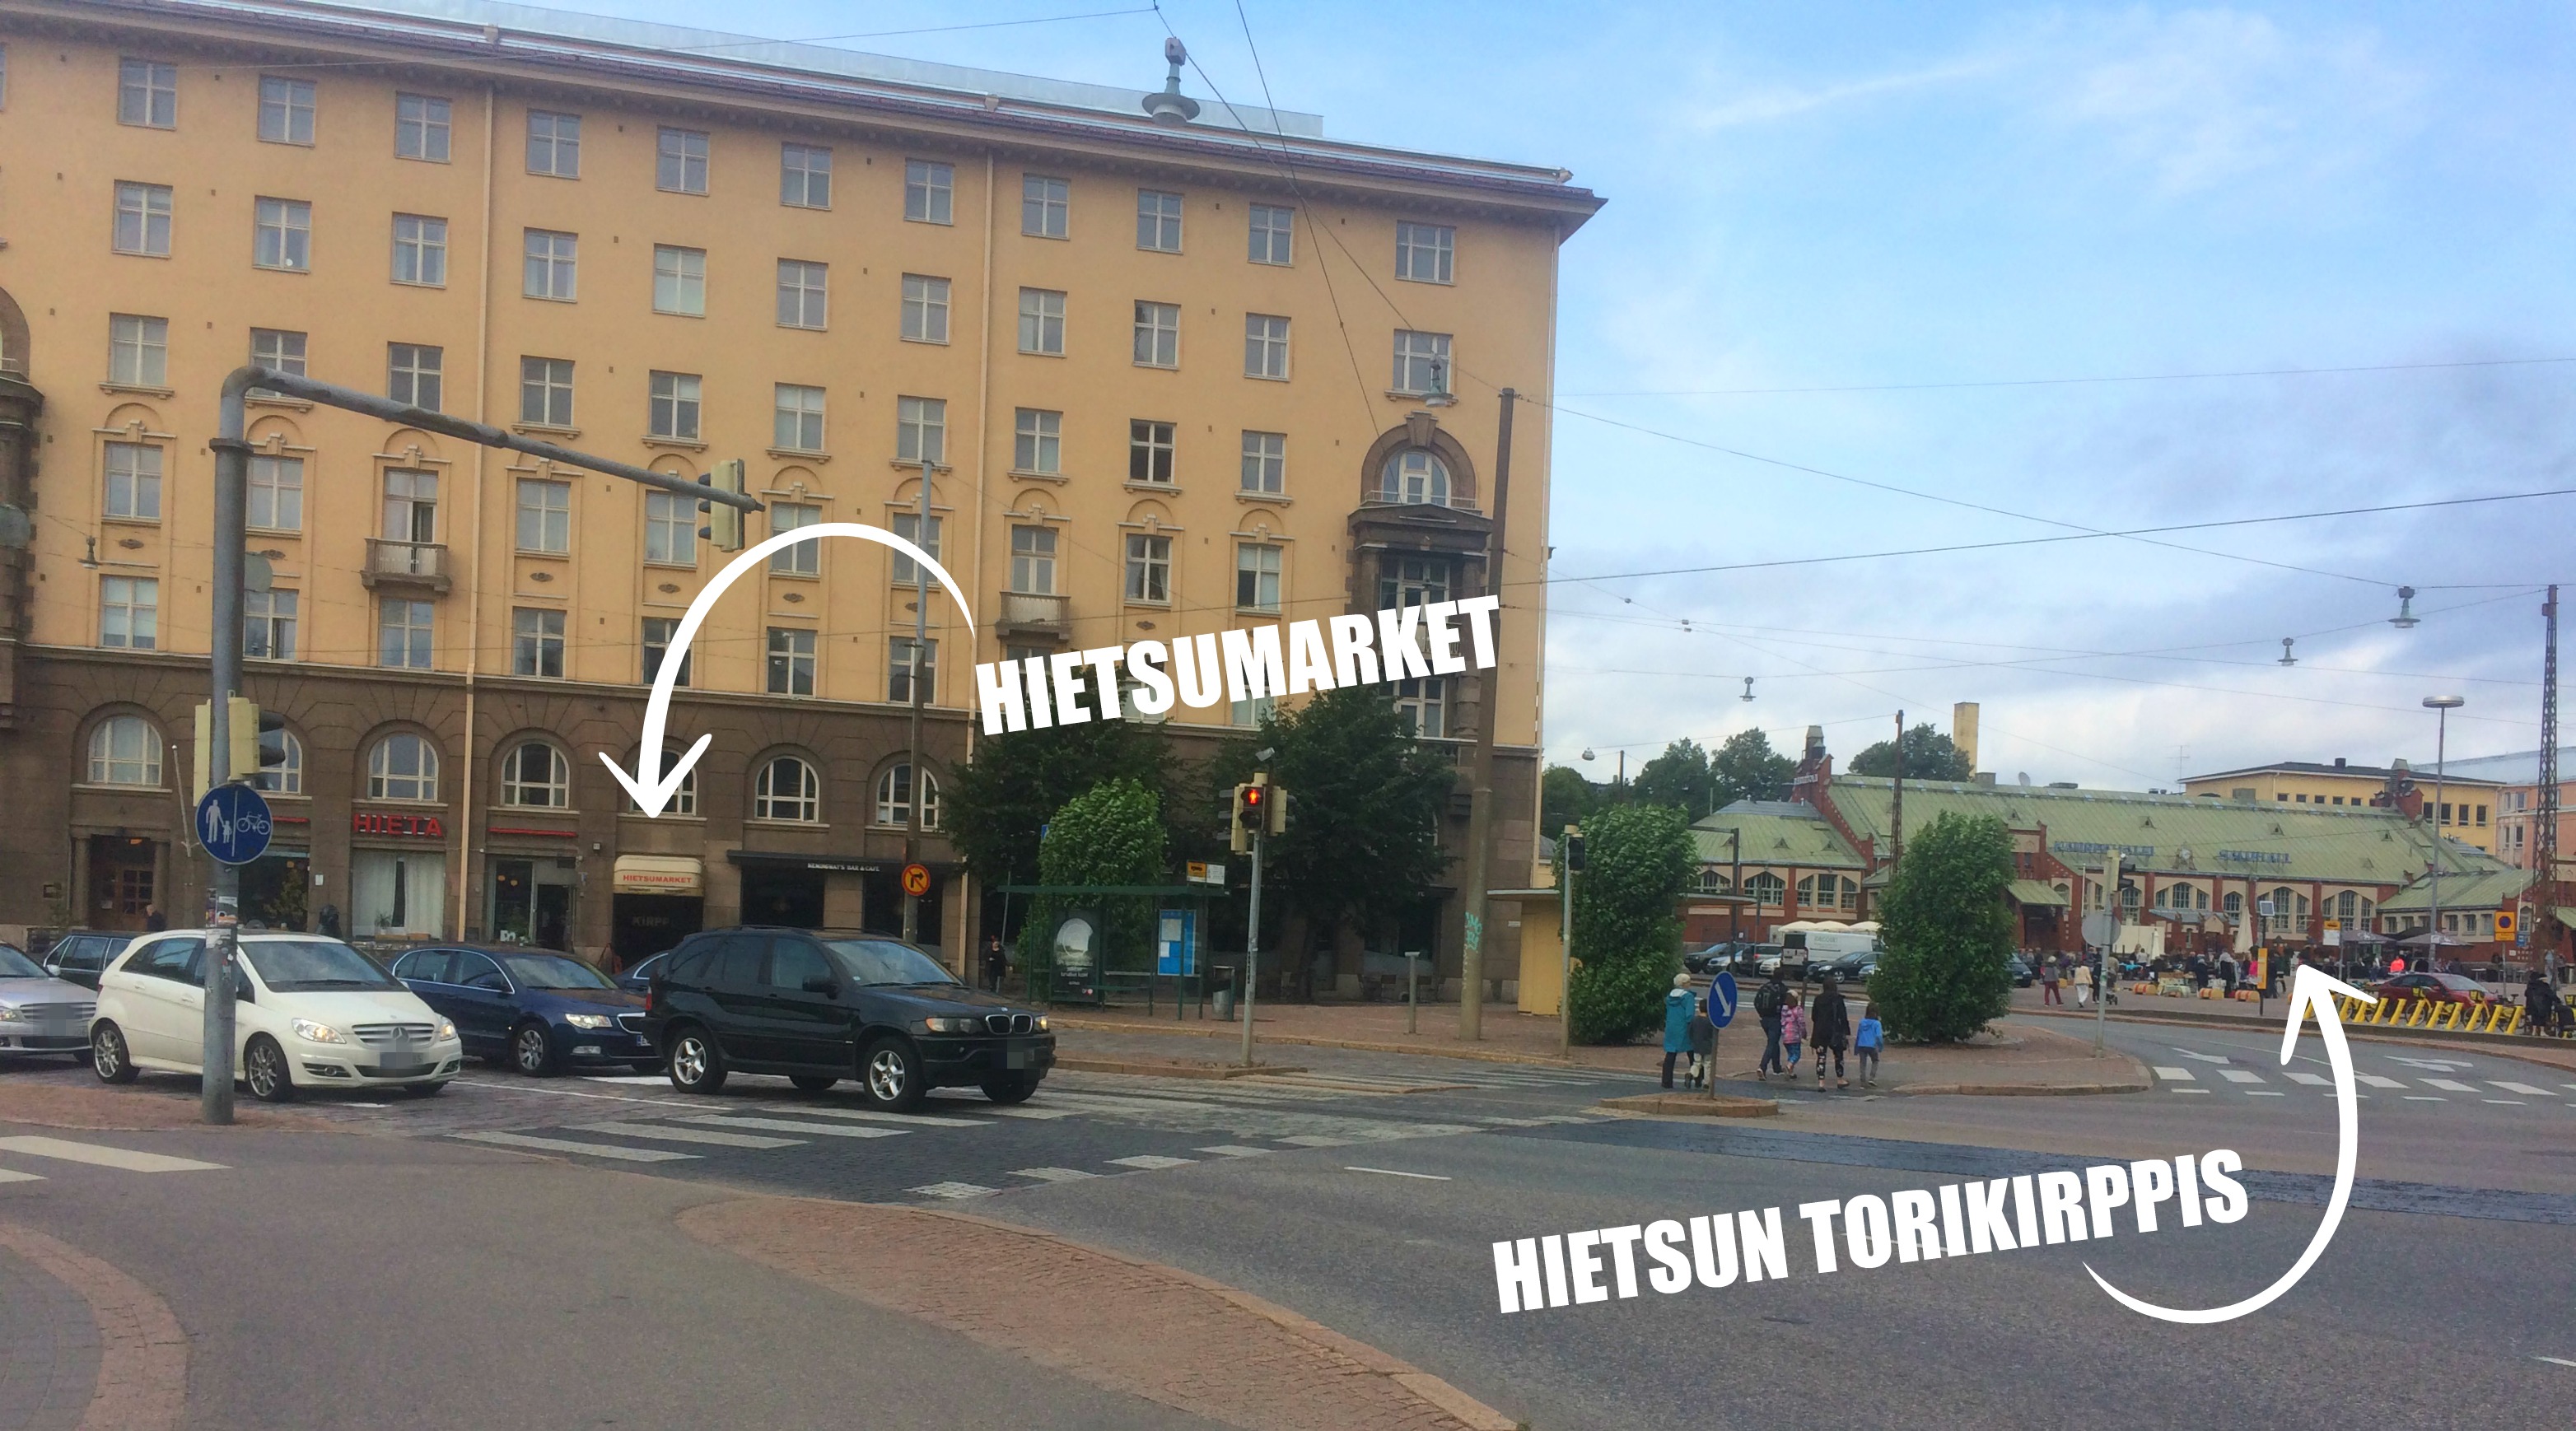 Hietsumarket Helsinki - Kirppiskiertue